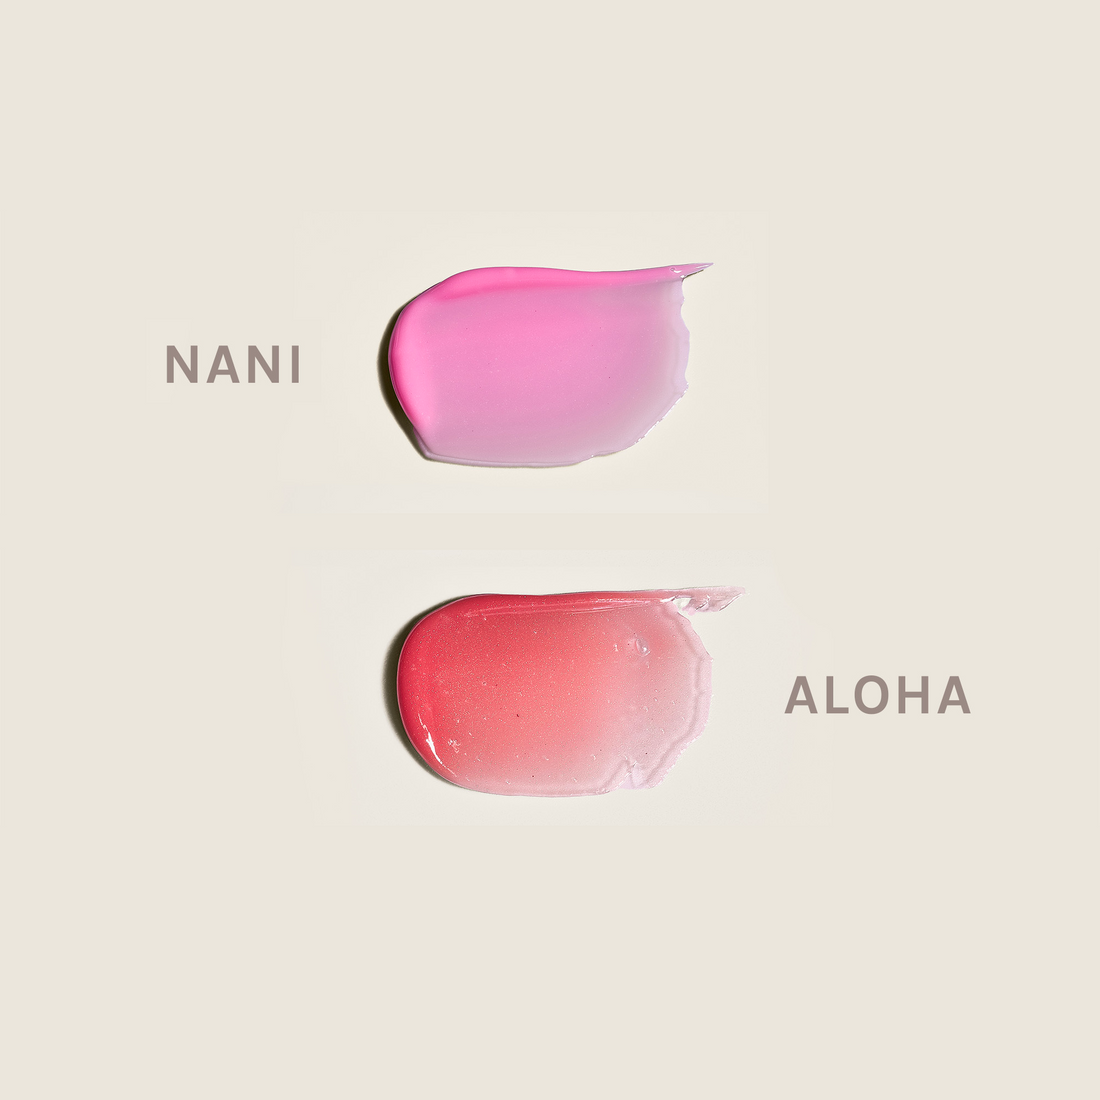 {"color":"Aloha/Nani"}